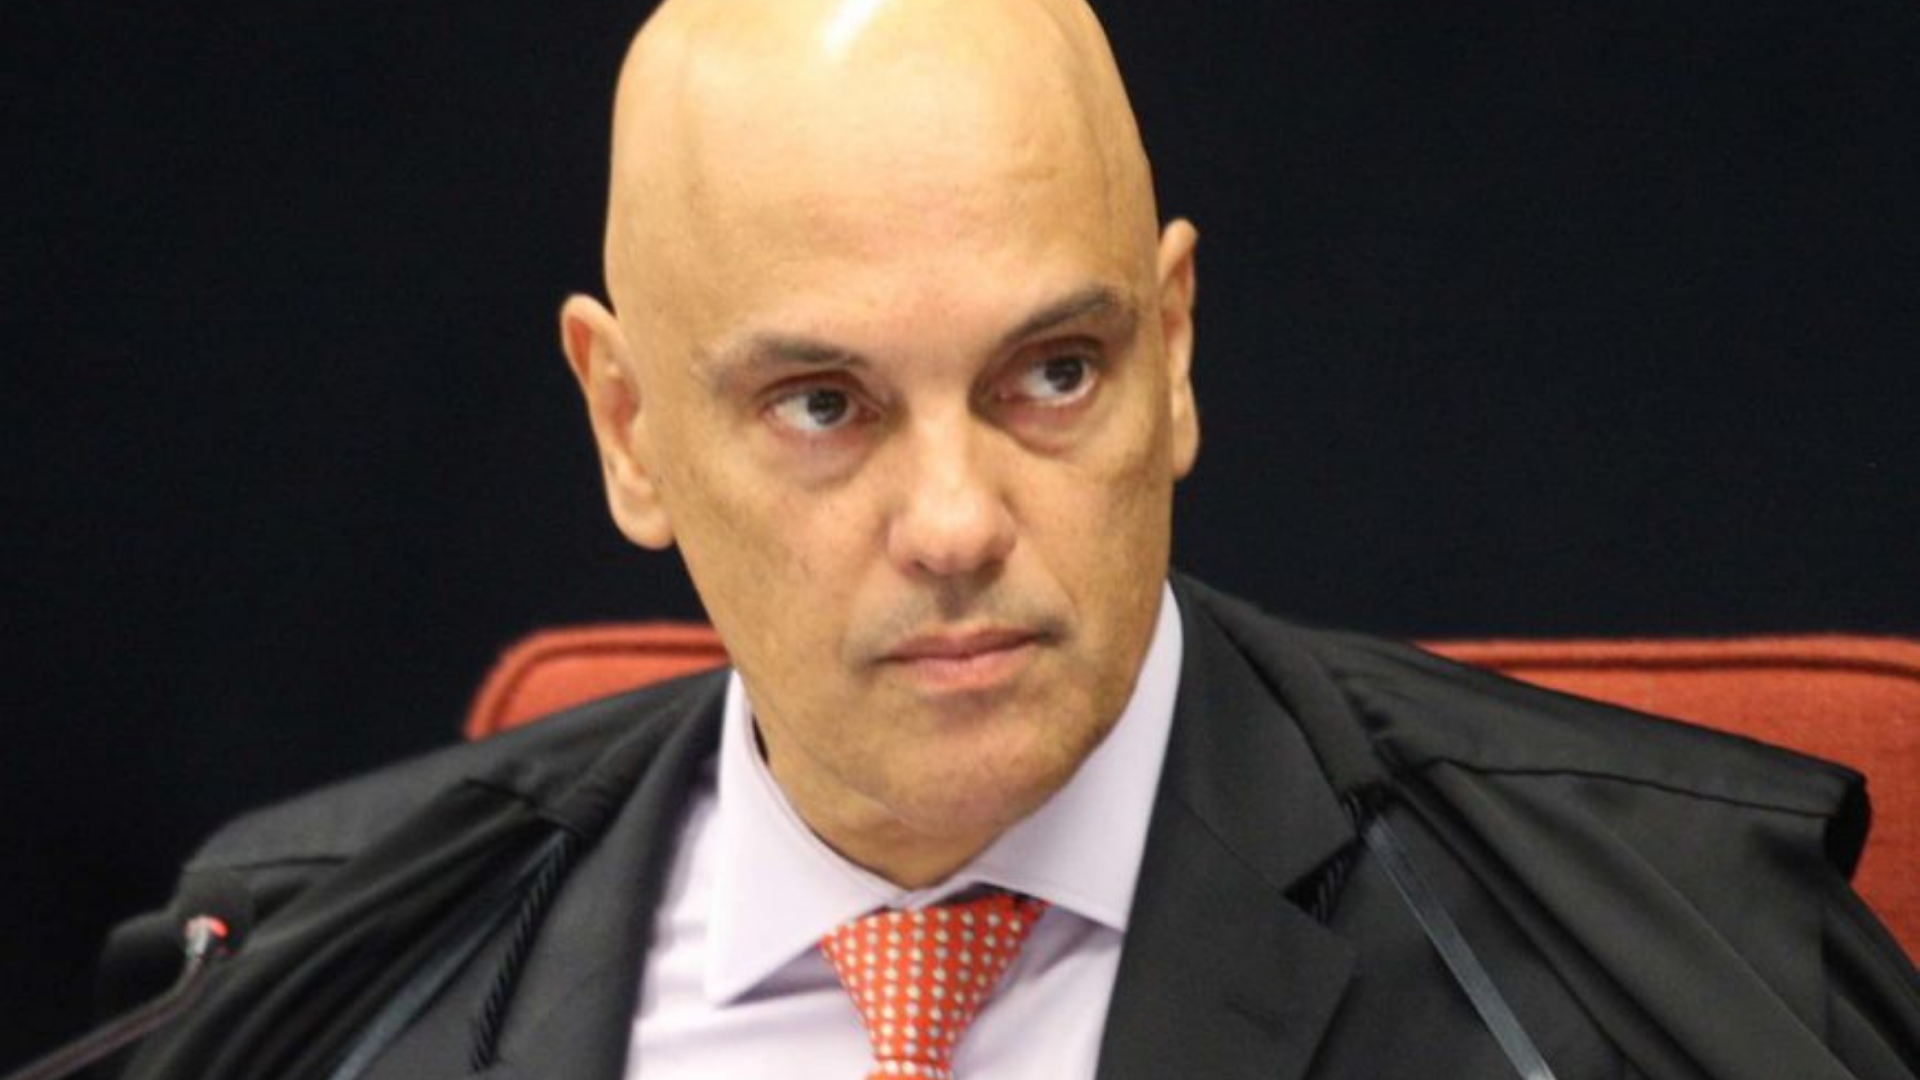 Alexandre de Moraes diz que Roberto Jefferson tenta burlar prisão domiciliar. Foto do ministro no STf com olhar sério.